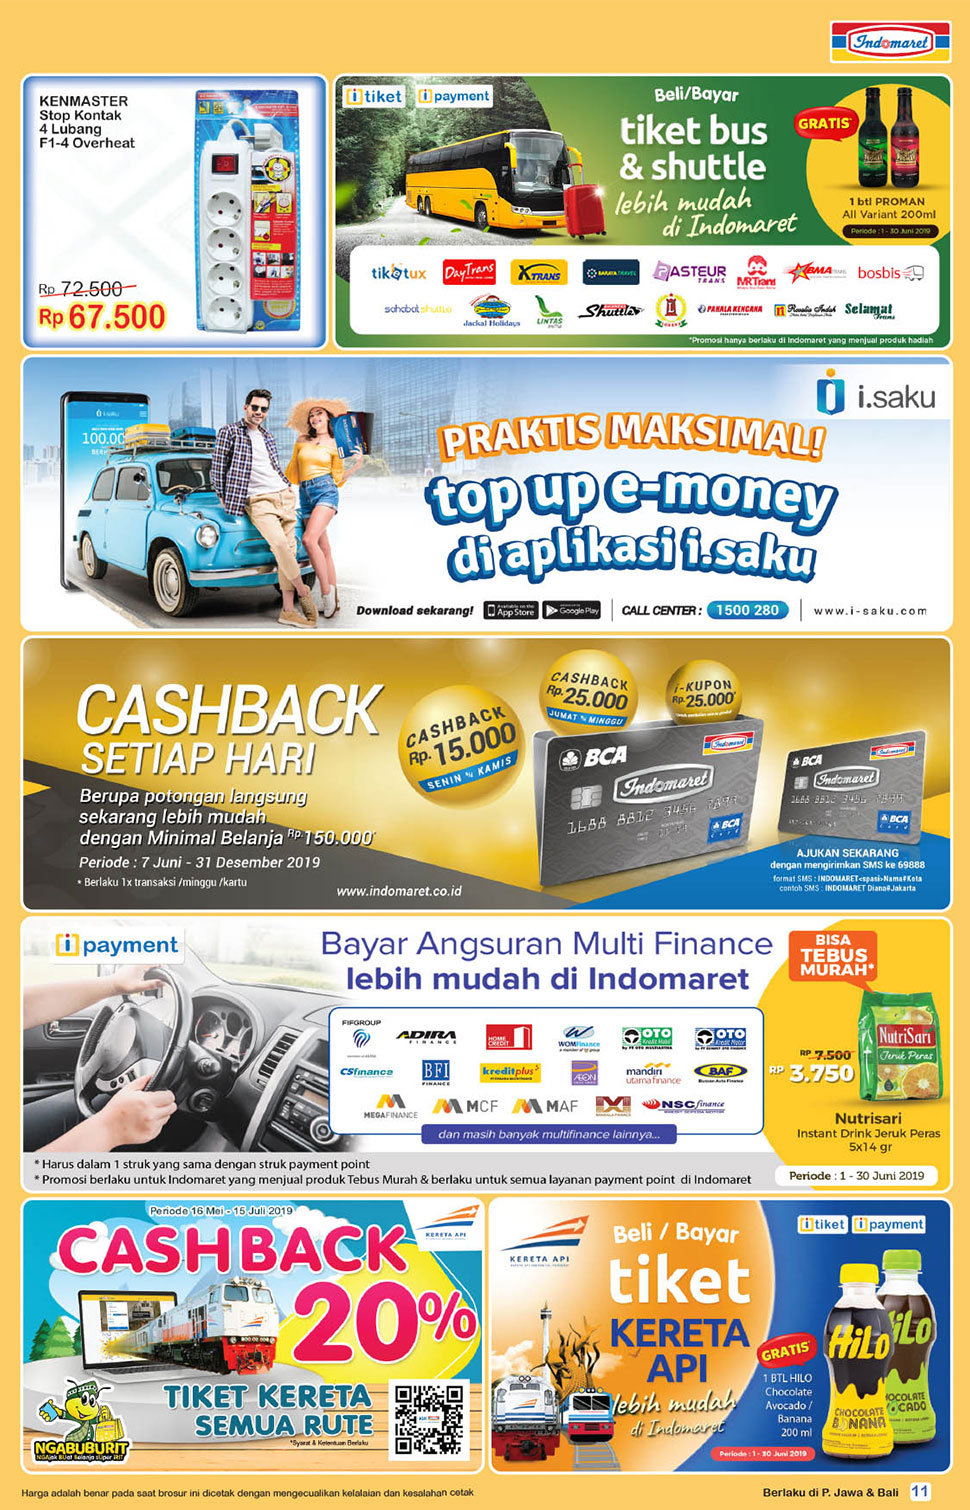 Promo Cash Back Indomaret